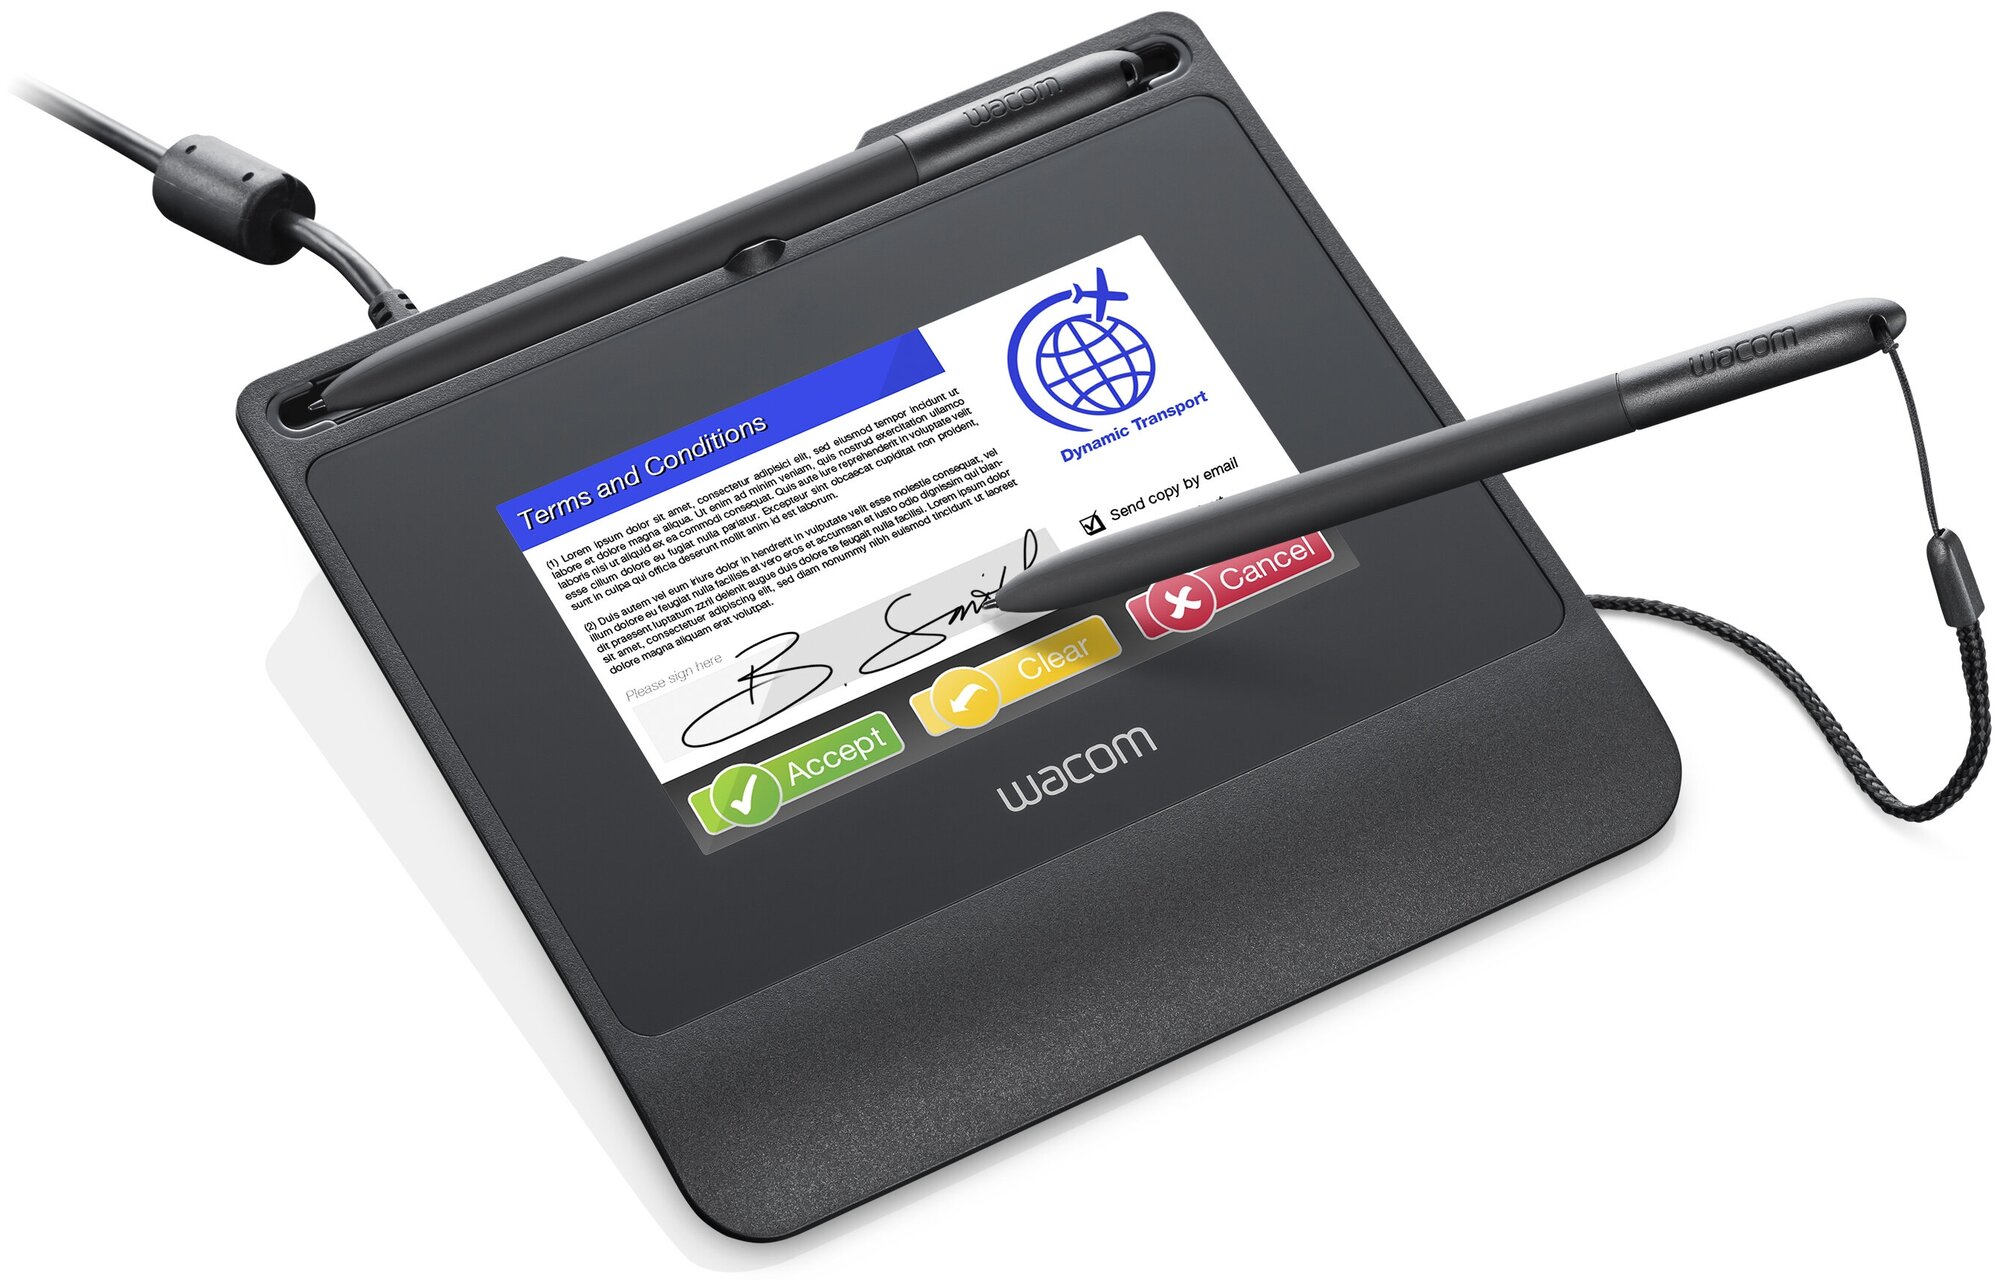 Графический планшет WACOM SignPad (STU-540)